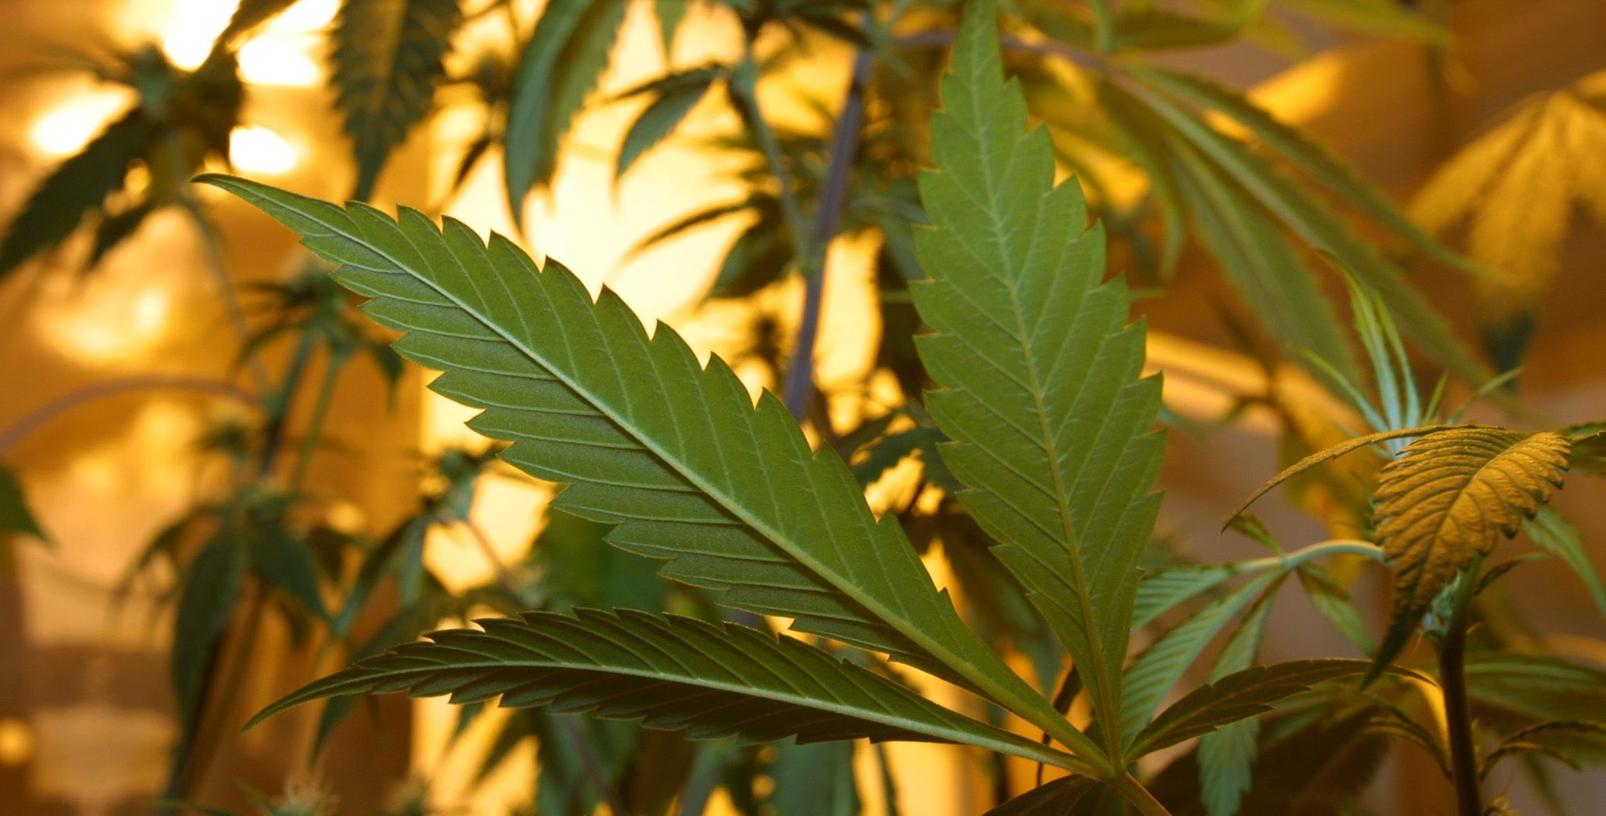 Eine private Plantage mit 198 Cannabispflanzen und zwei Kilogramm Marihuana stellte die Kripo Würzburg am Dienstag in der Wohnung einer 34-Jährigen sicher. (Symbolbild)